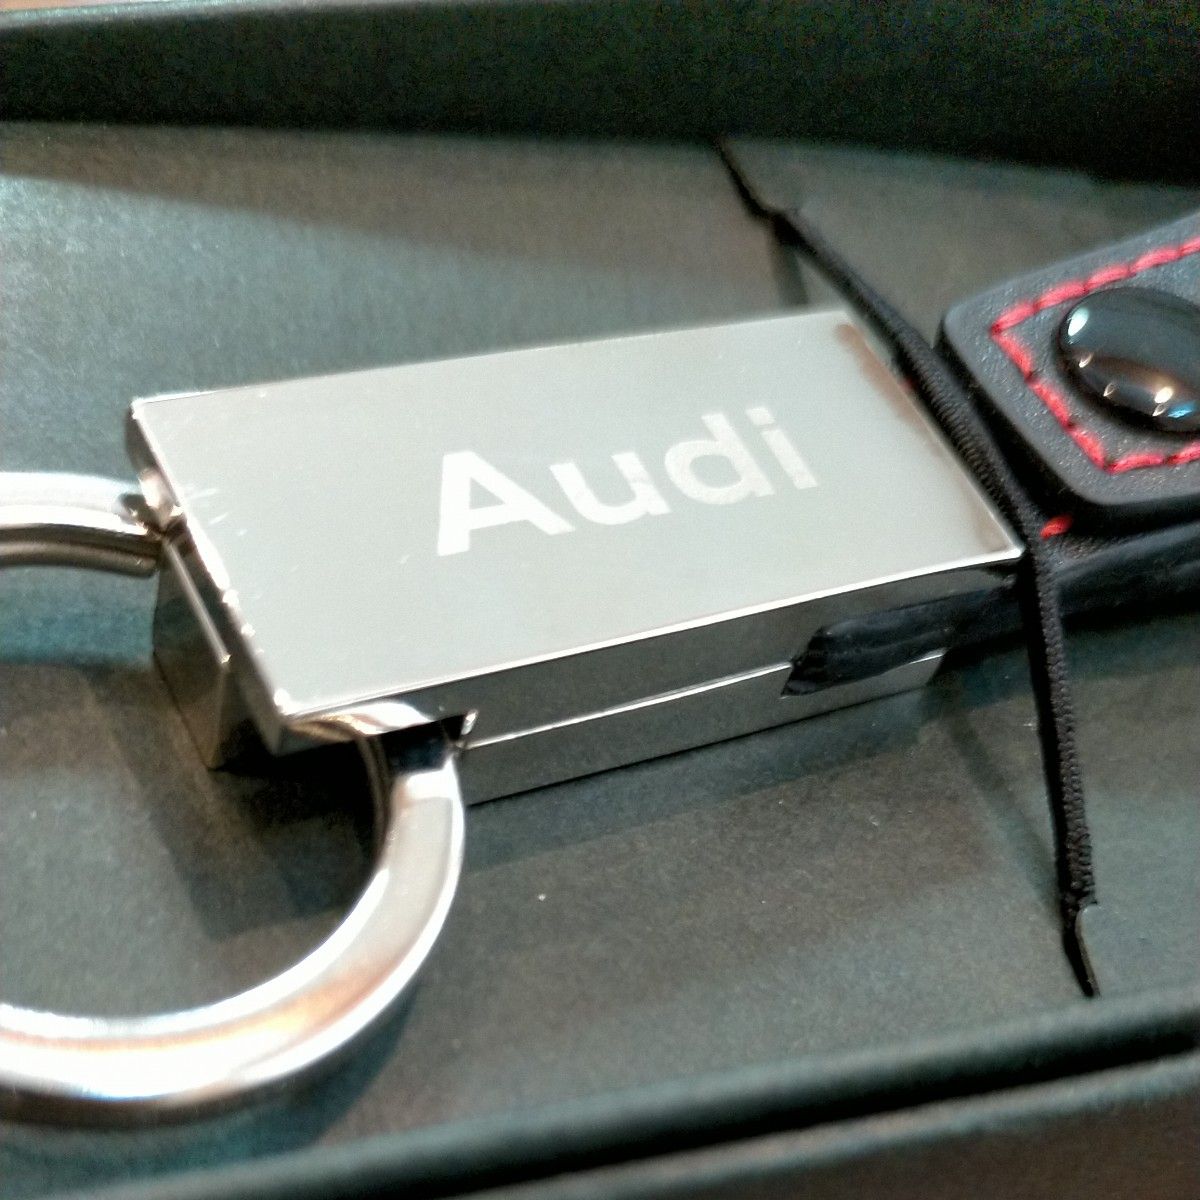 アウディ Audi キーホルダー キーリング レザー 革 キーリング キーケース アクセサリー 車 ノベルティ